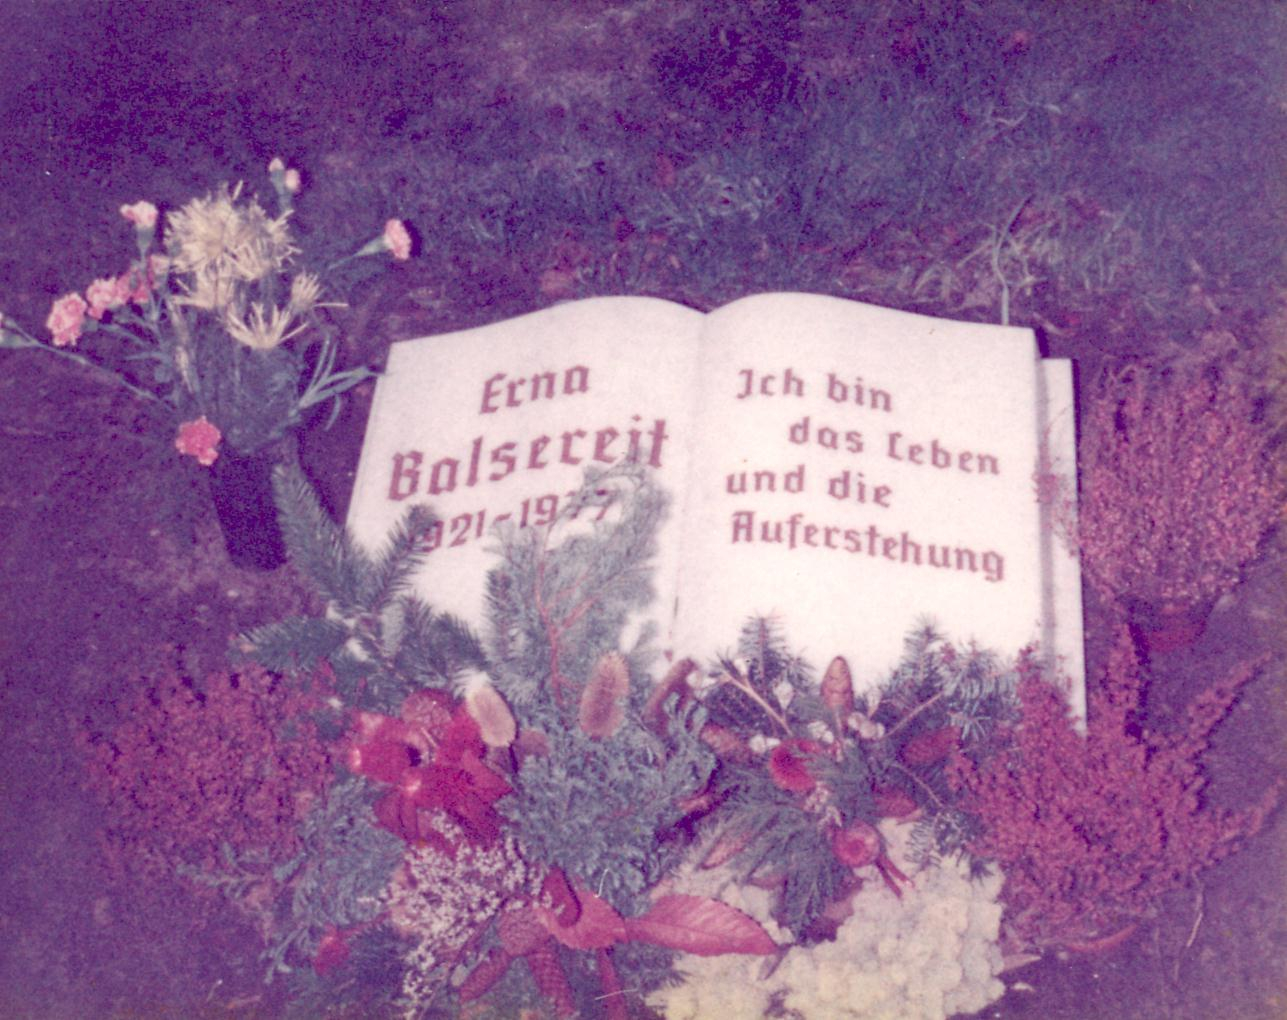 Erno Balsereit Gravesite